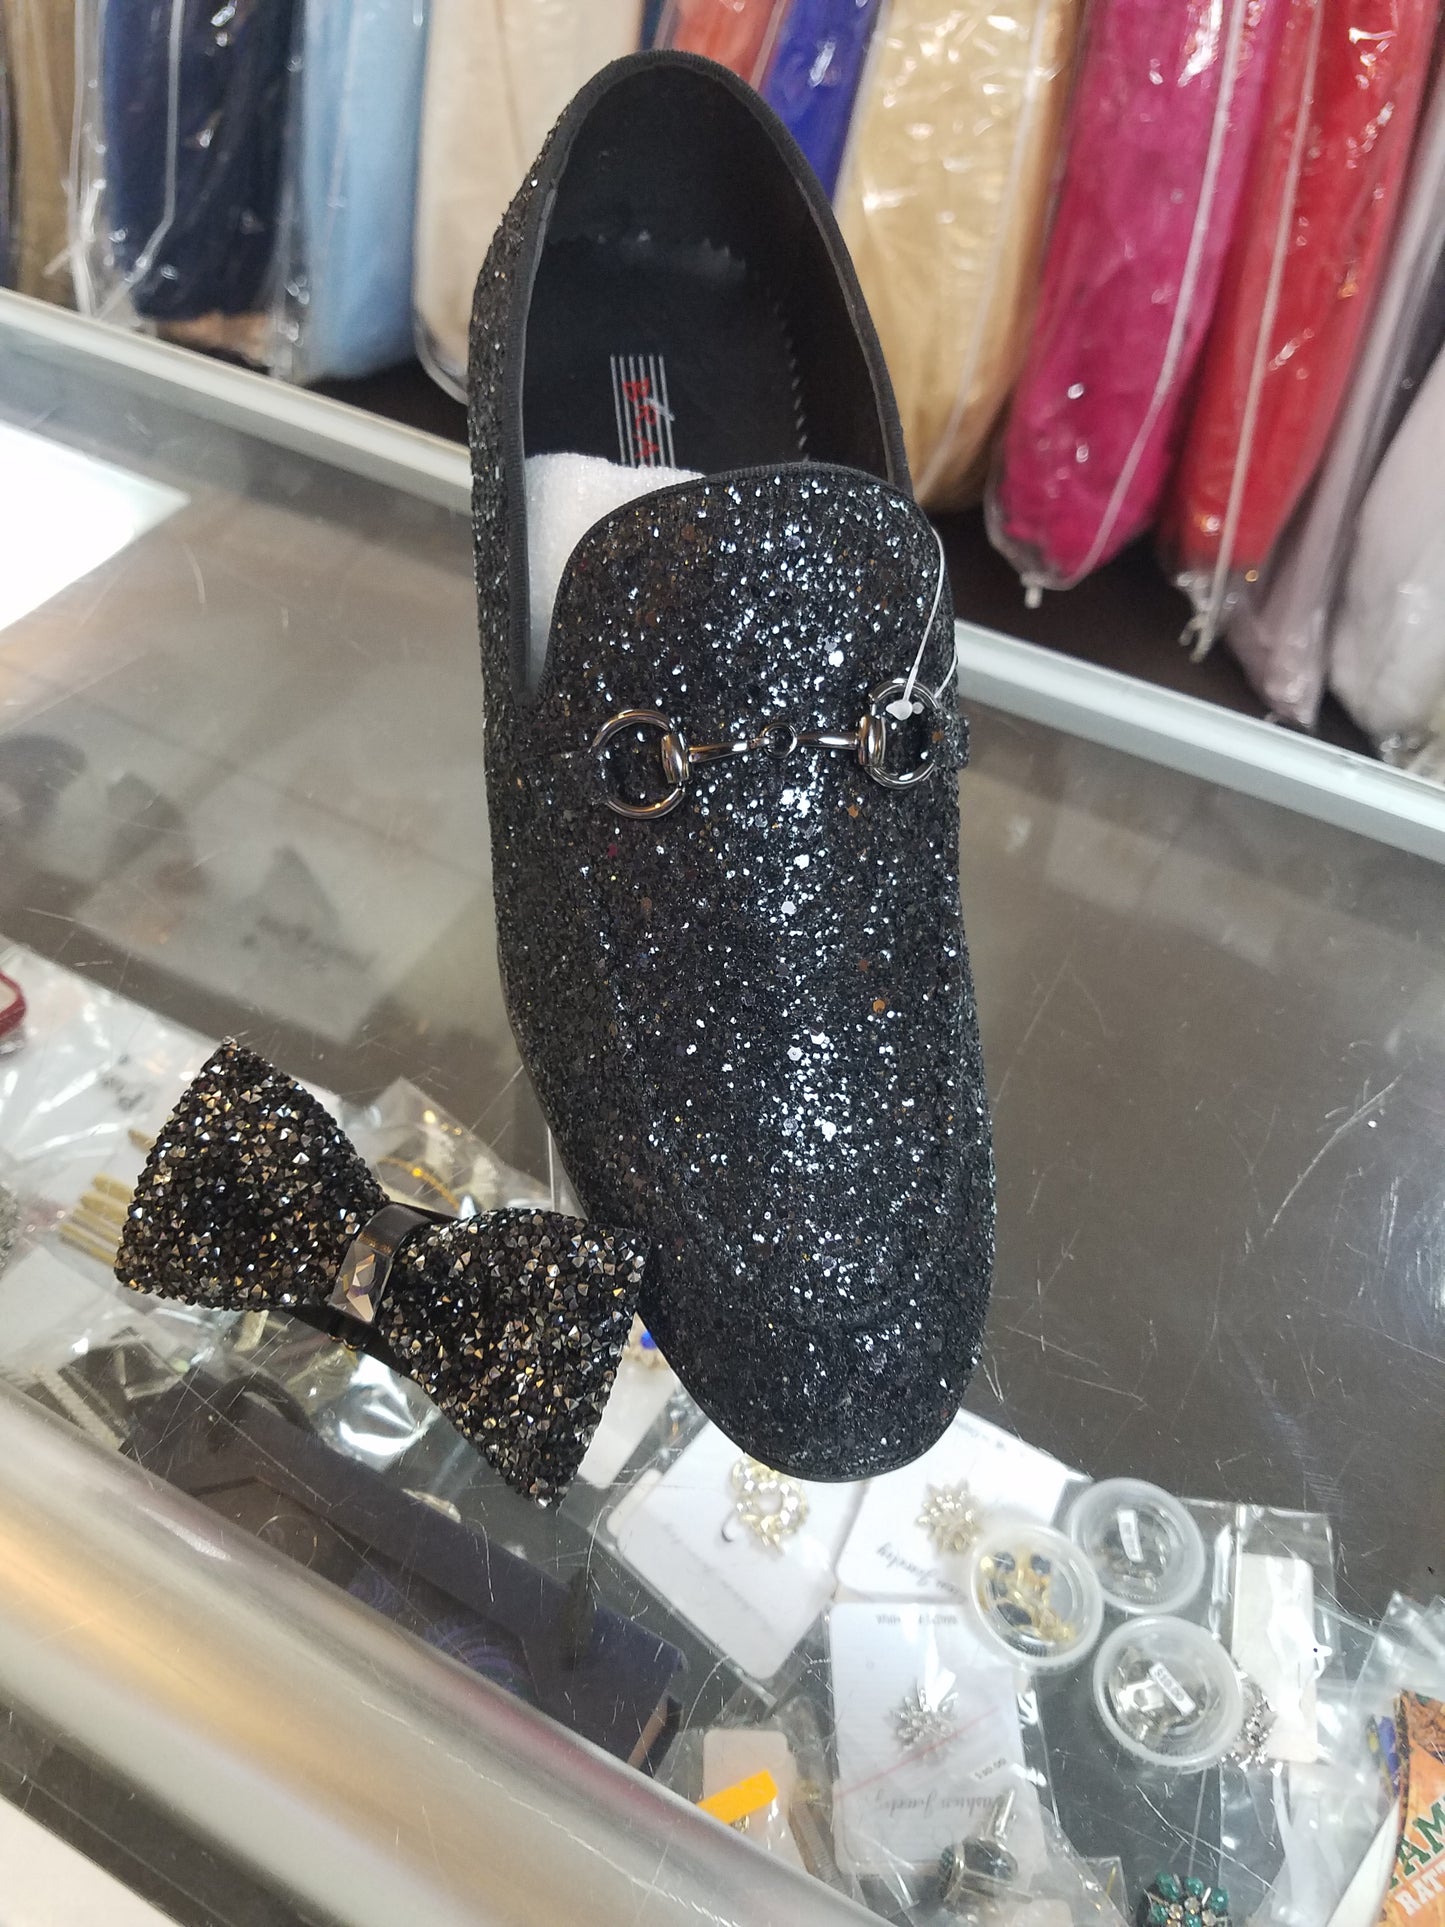 Black Sparkled Loafers